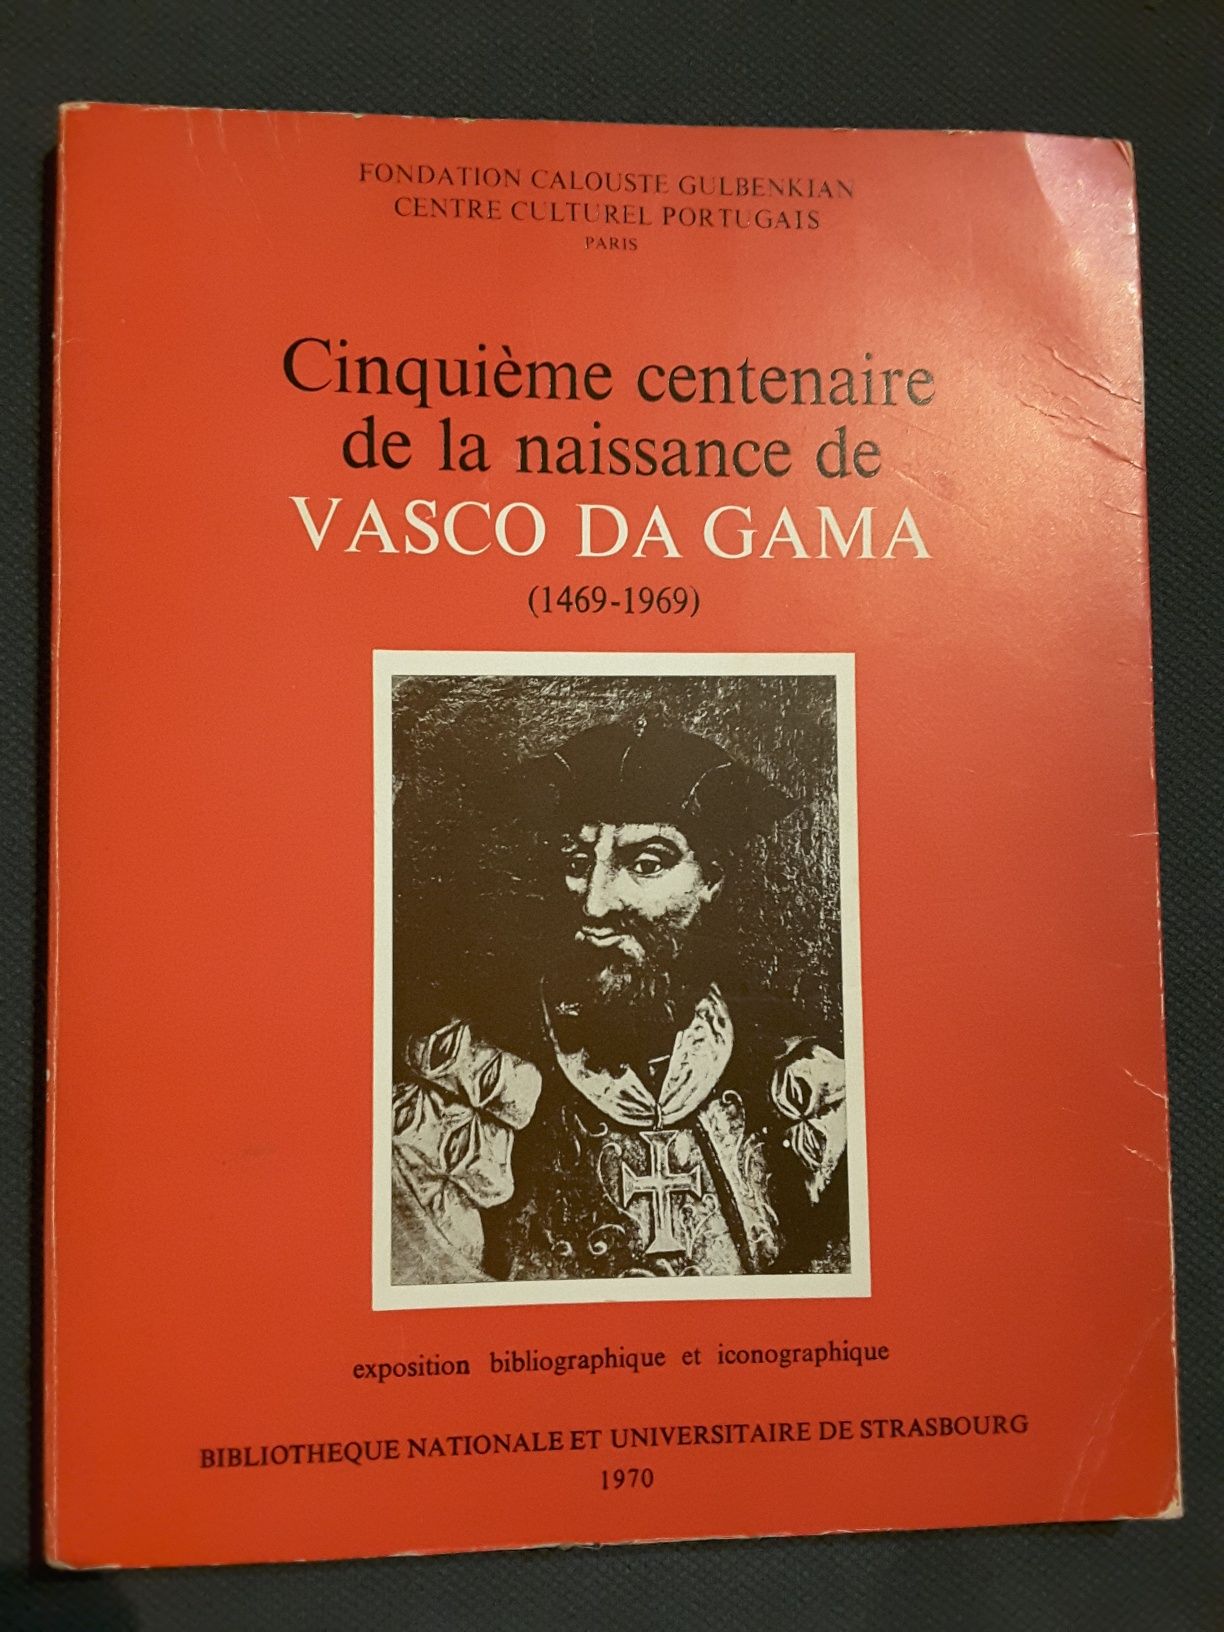 Nuno Álvares Pereira/ Vasco da Gama/ Cartas Baianas